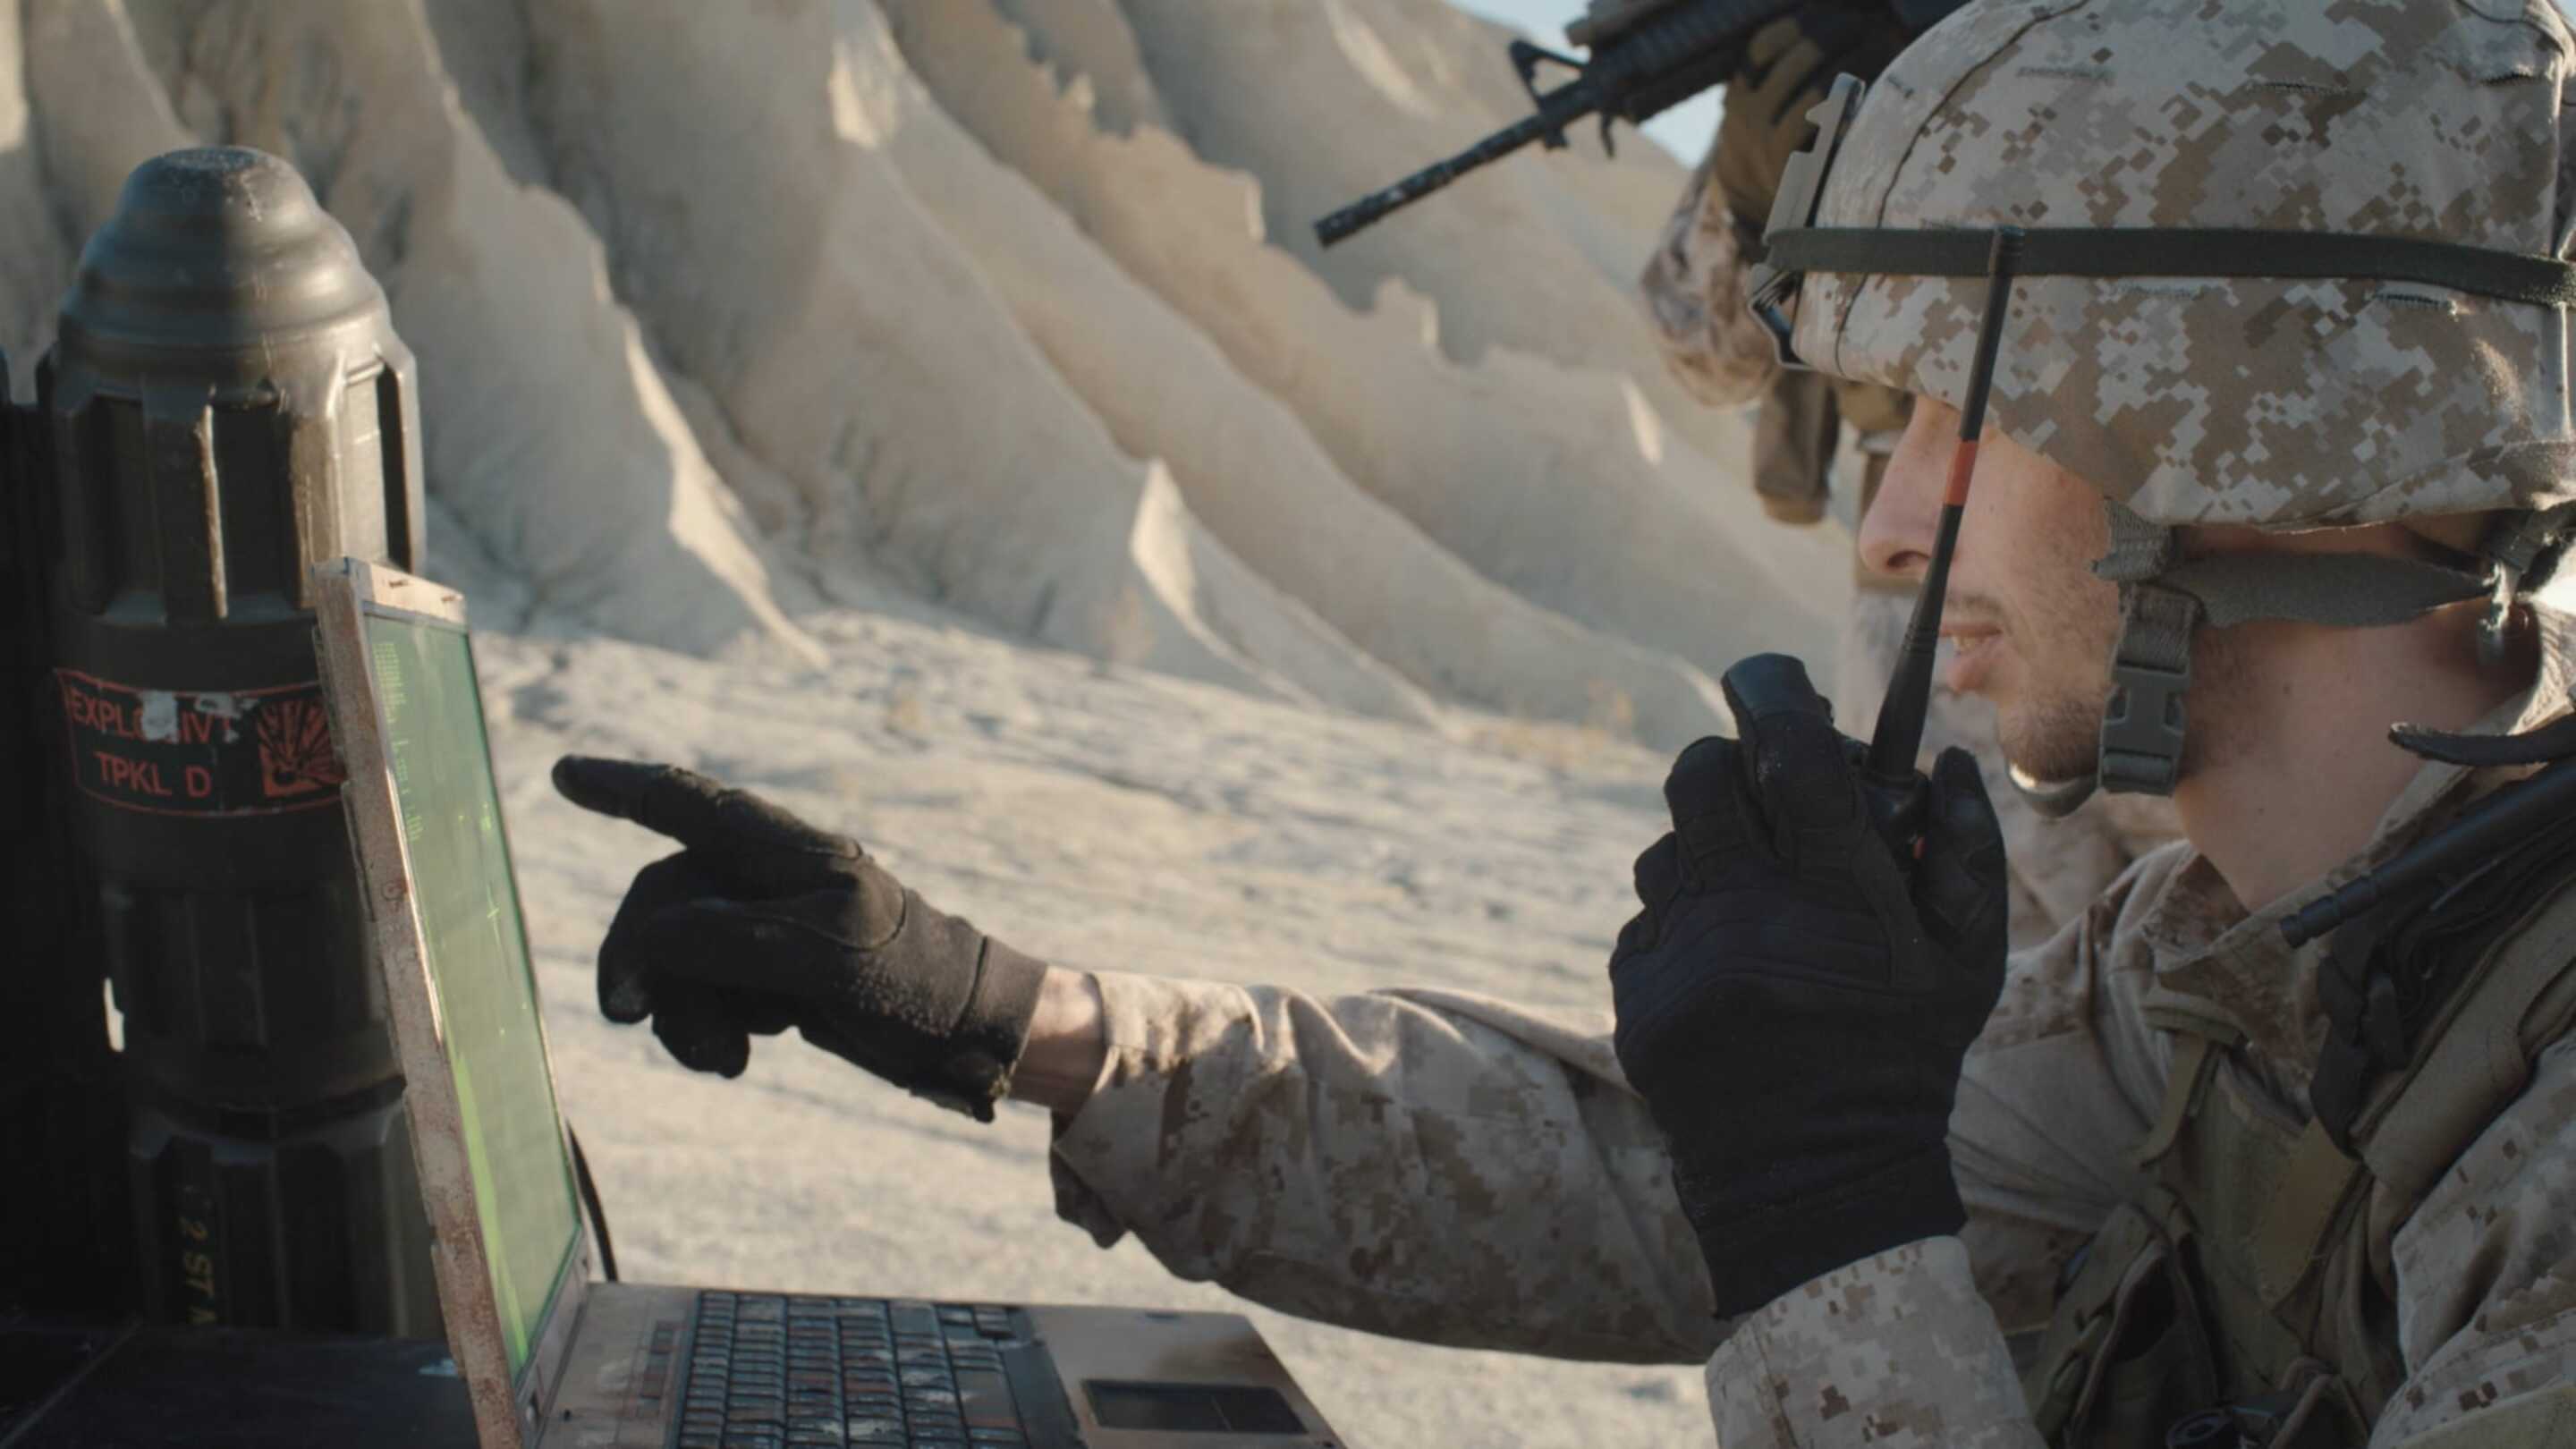 Tempest - सैन्य टचस्क्रीन एक लैपटॉप का उपयोग कर सैन्य वर्दी में एक आदमी